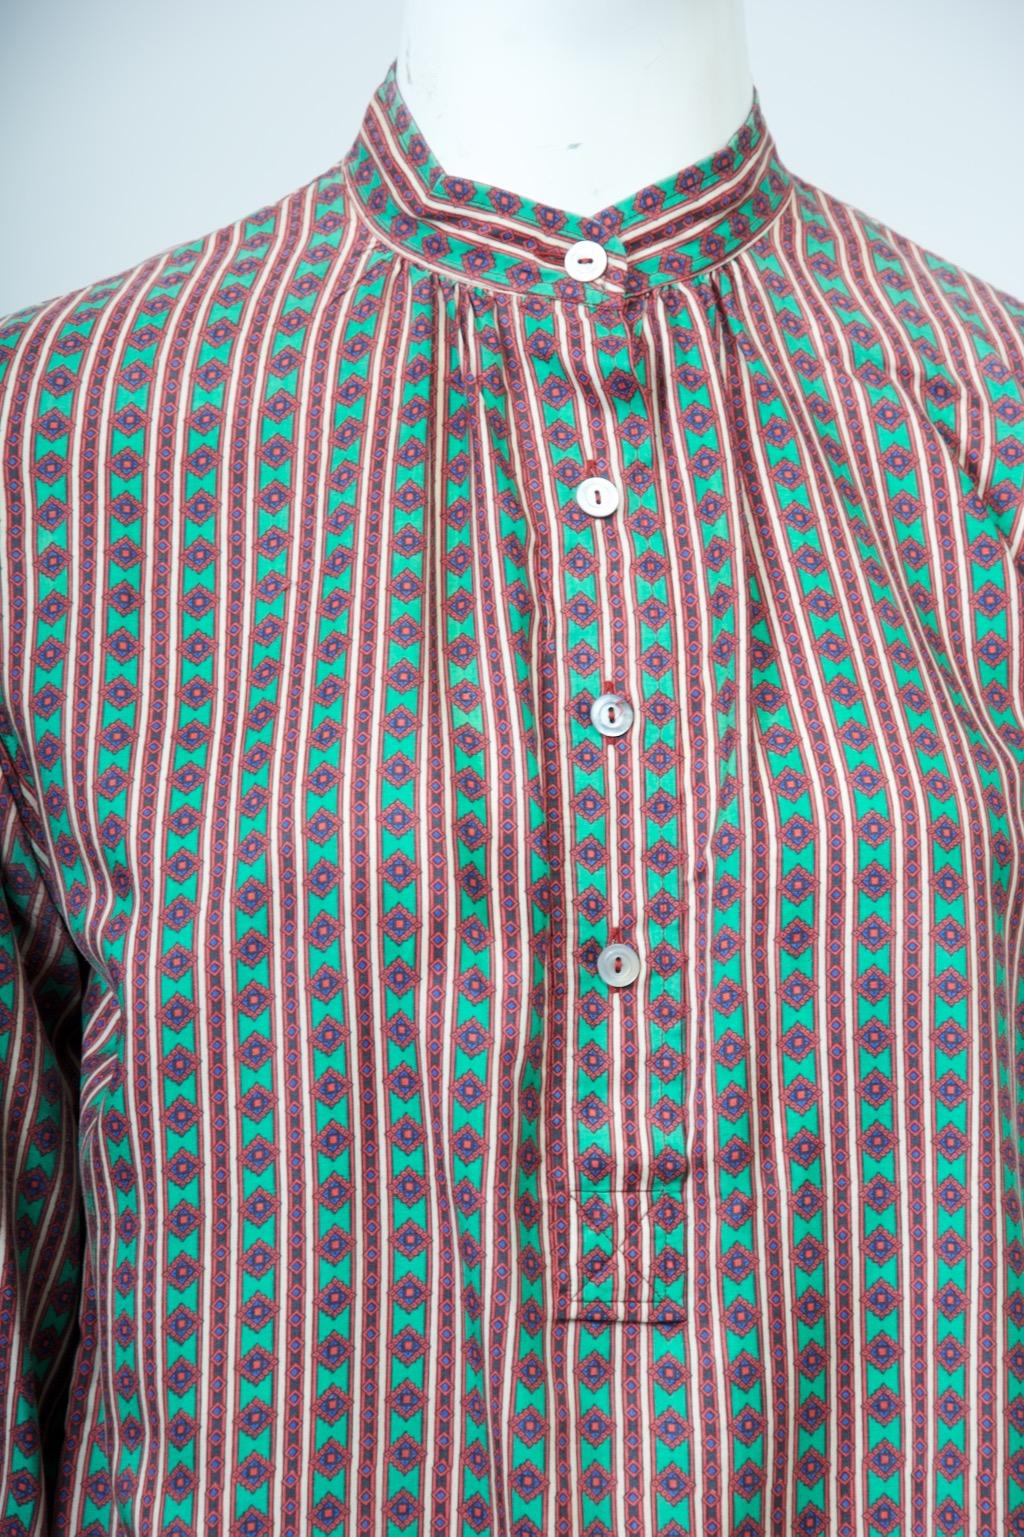 Saint Laurent Rive Gauche Bluse aus einem kleinen, geometrischen, vertikal ausgerichteten  Seidendruck in überwiegend grüner Farbgebung mit Kontrasten in Dunkelblau, Orange und Elfenbein. Die Bluse wird über den Kopf gezogen und hat einen